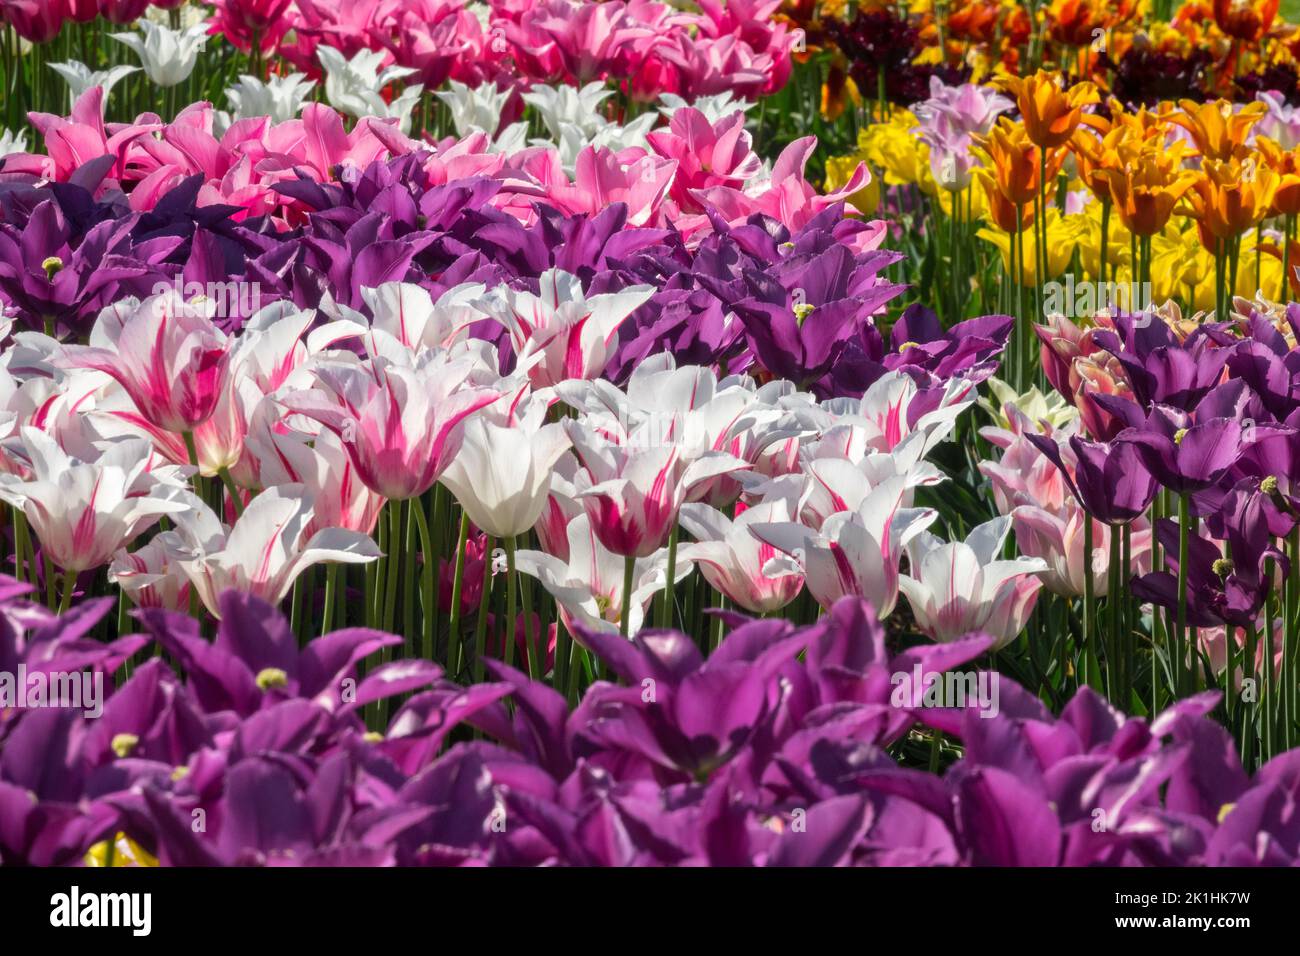 Rosa viola fiori primavera tulipani in fiore letto colorato misto tulipani visualizzare flowerbed rosa viola bianco giallo ampia gamma di colori tulipani Foto Stock